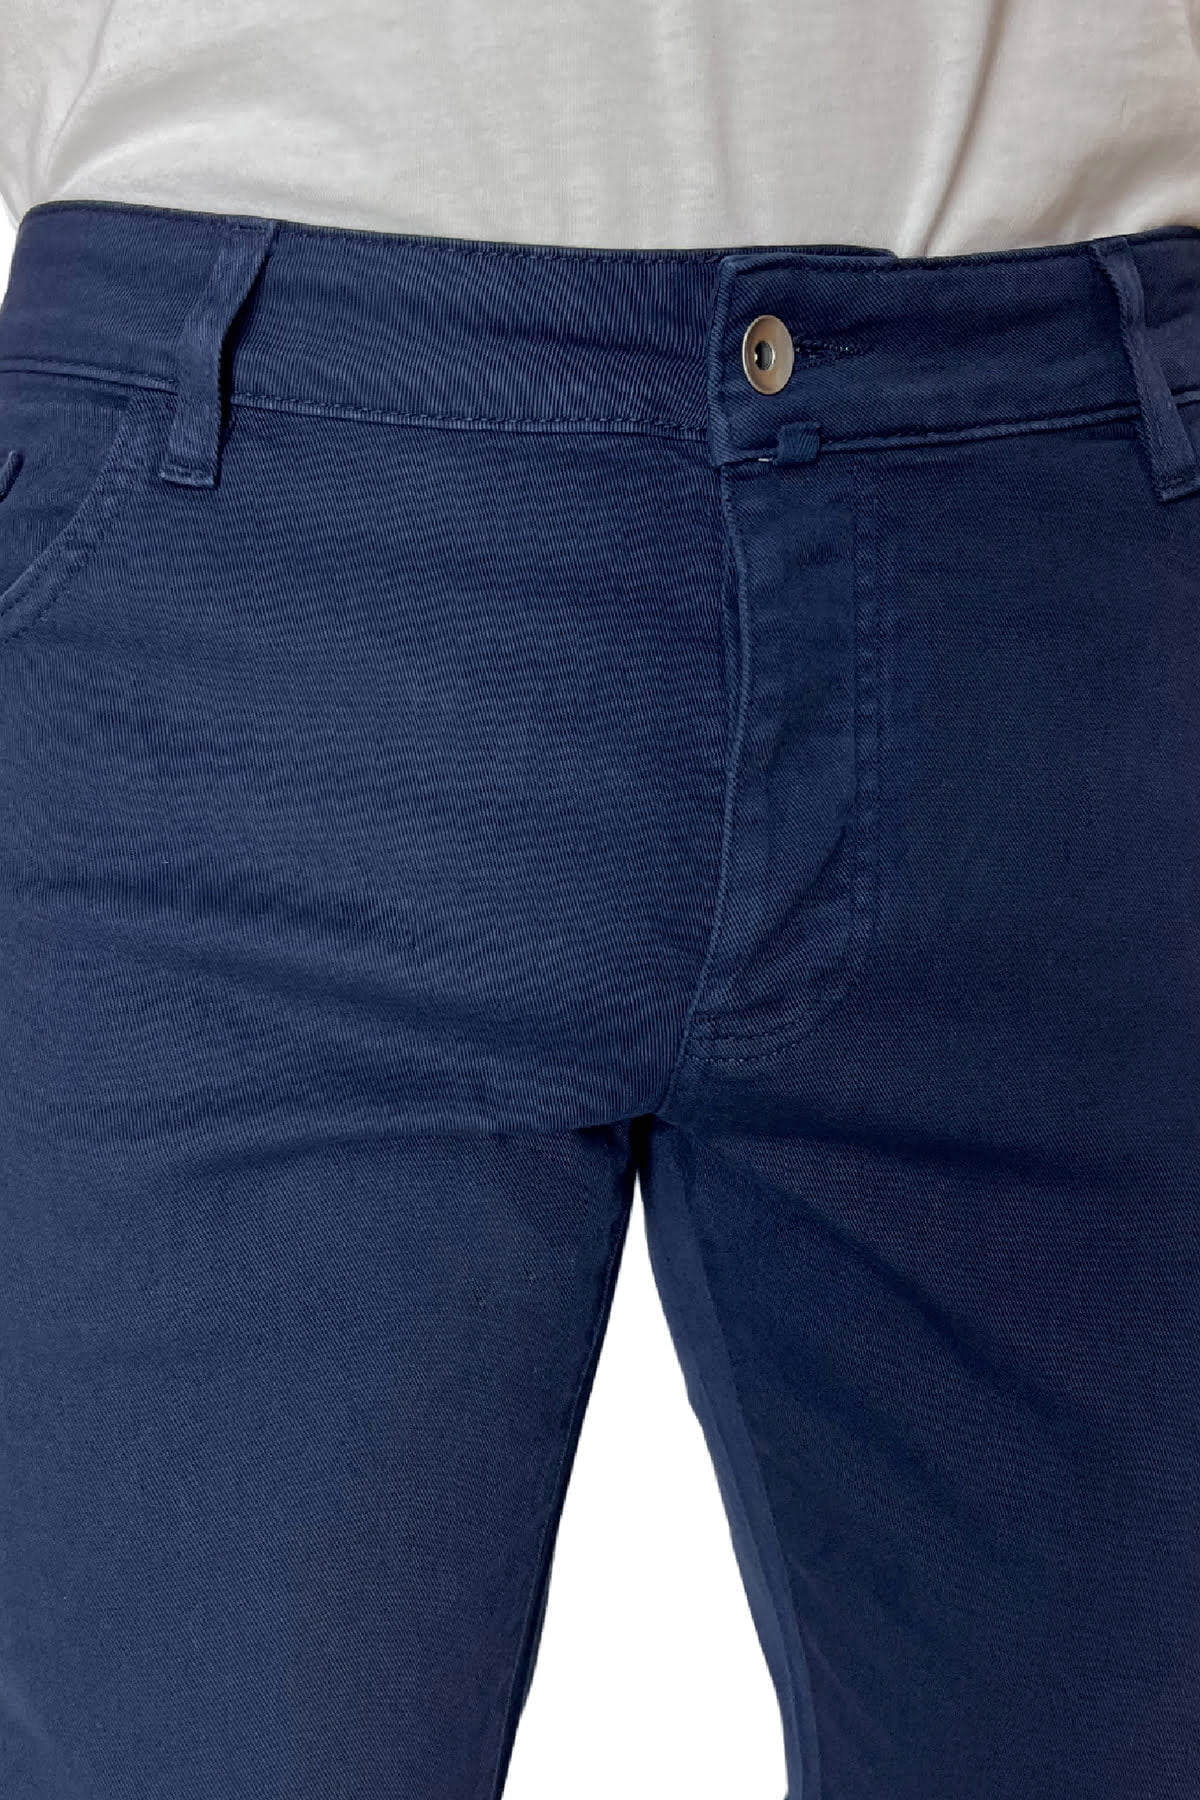 Jeans uomo blu tinta unita modello 5 tasche slim fit estivo made in italy